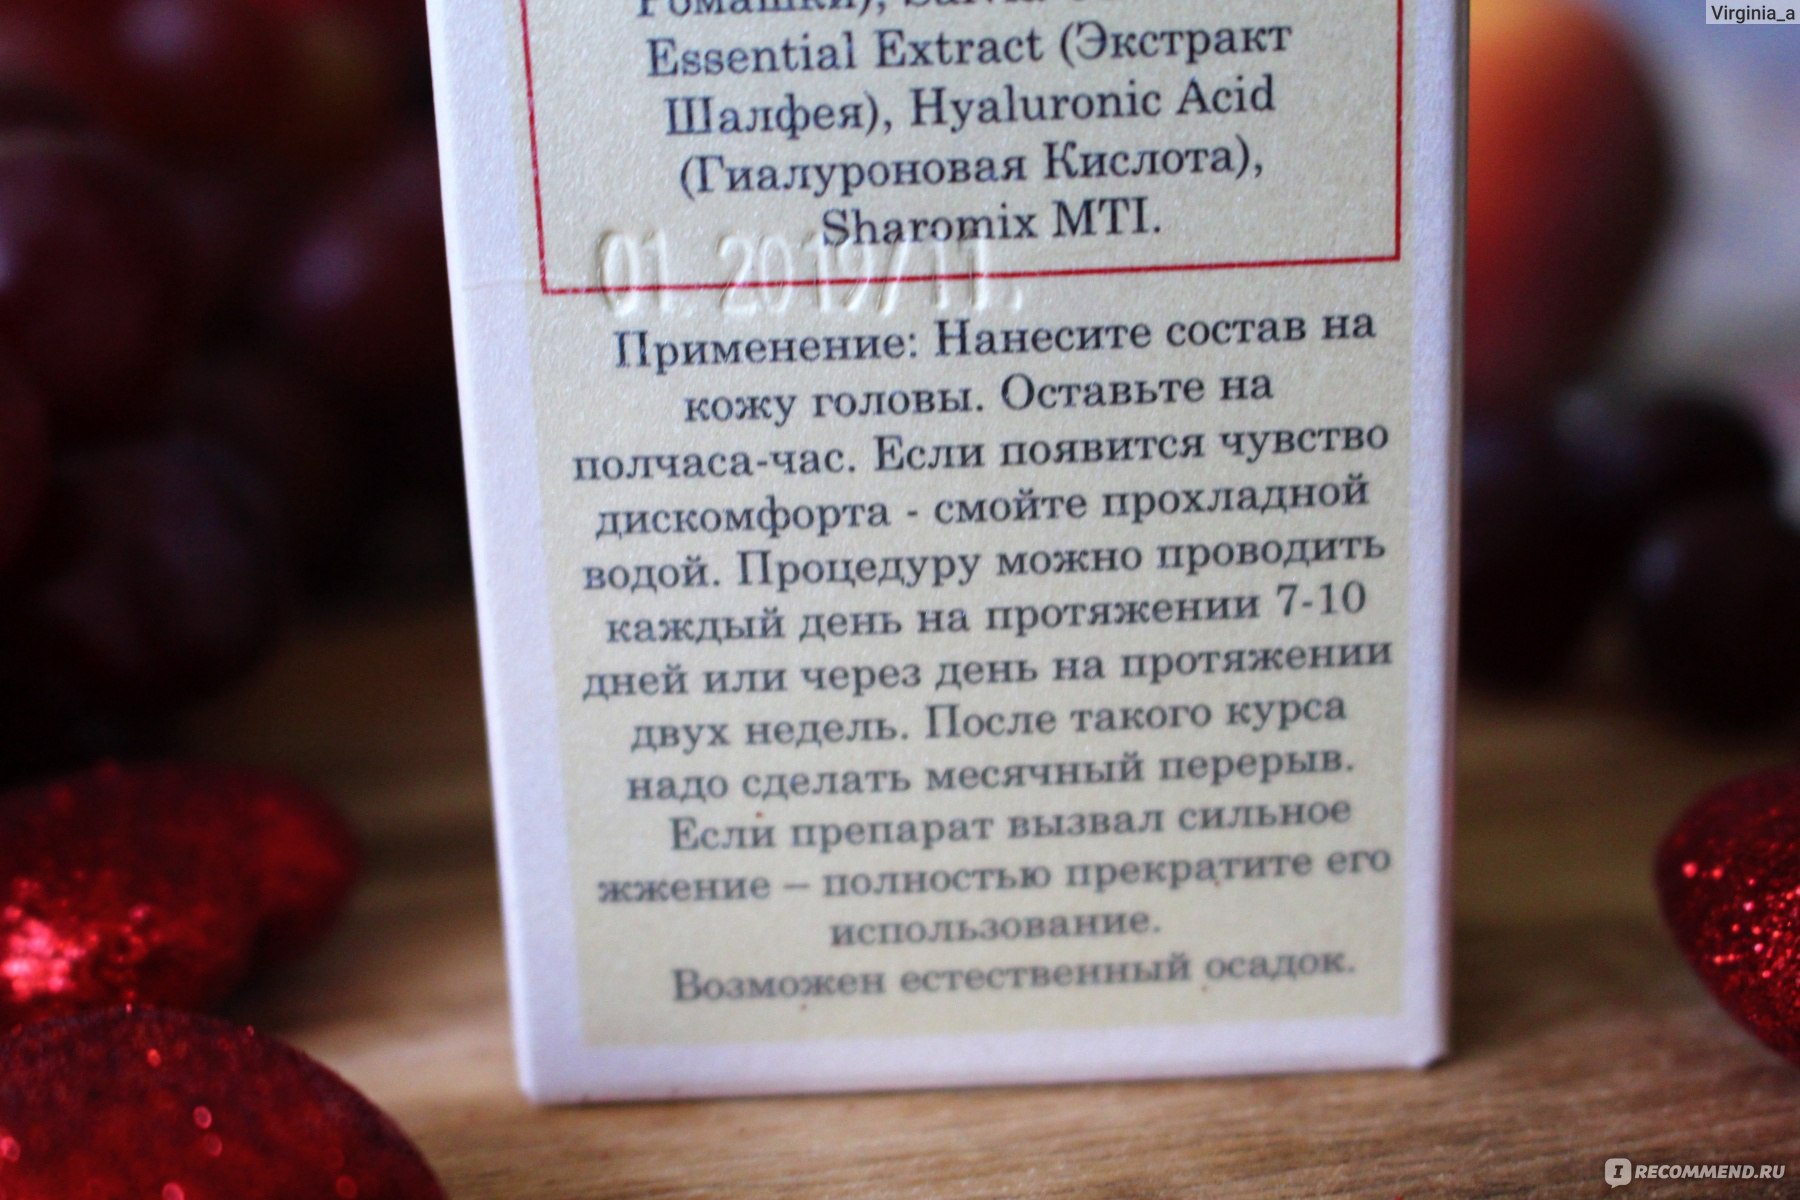 Маска с никотиновой кислотой для роста волос — домашний рецепт и отзывы | maska-volos.ru